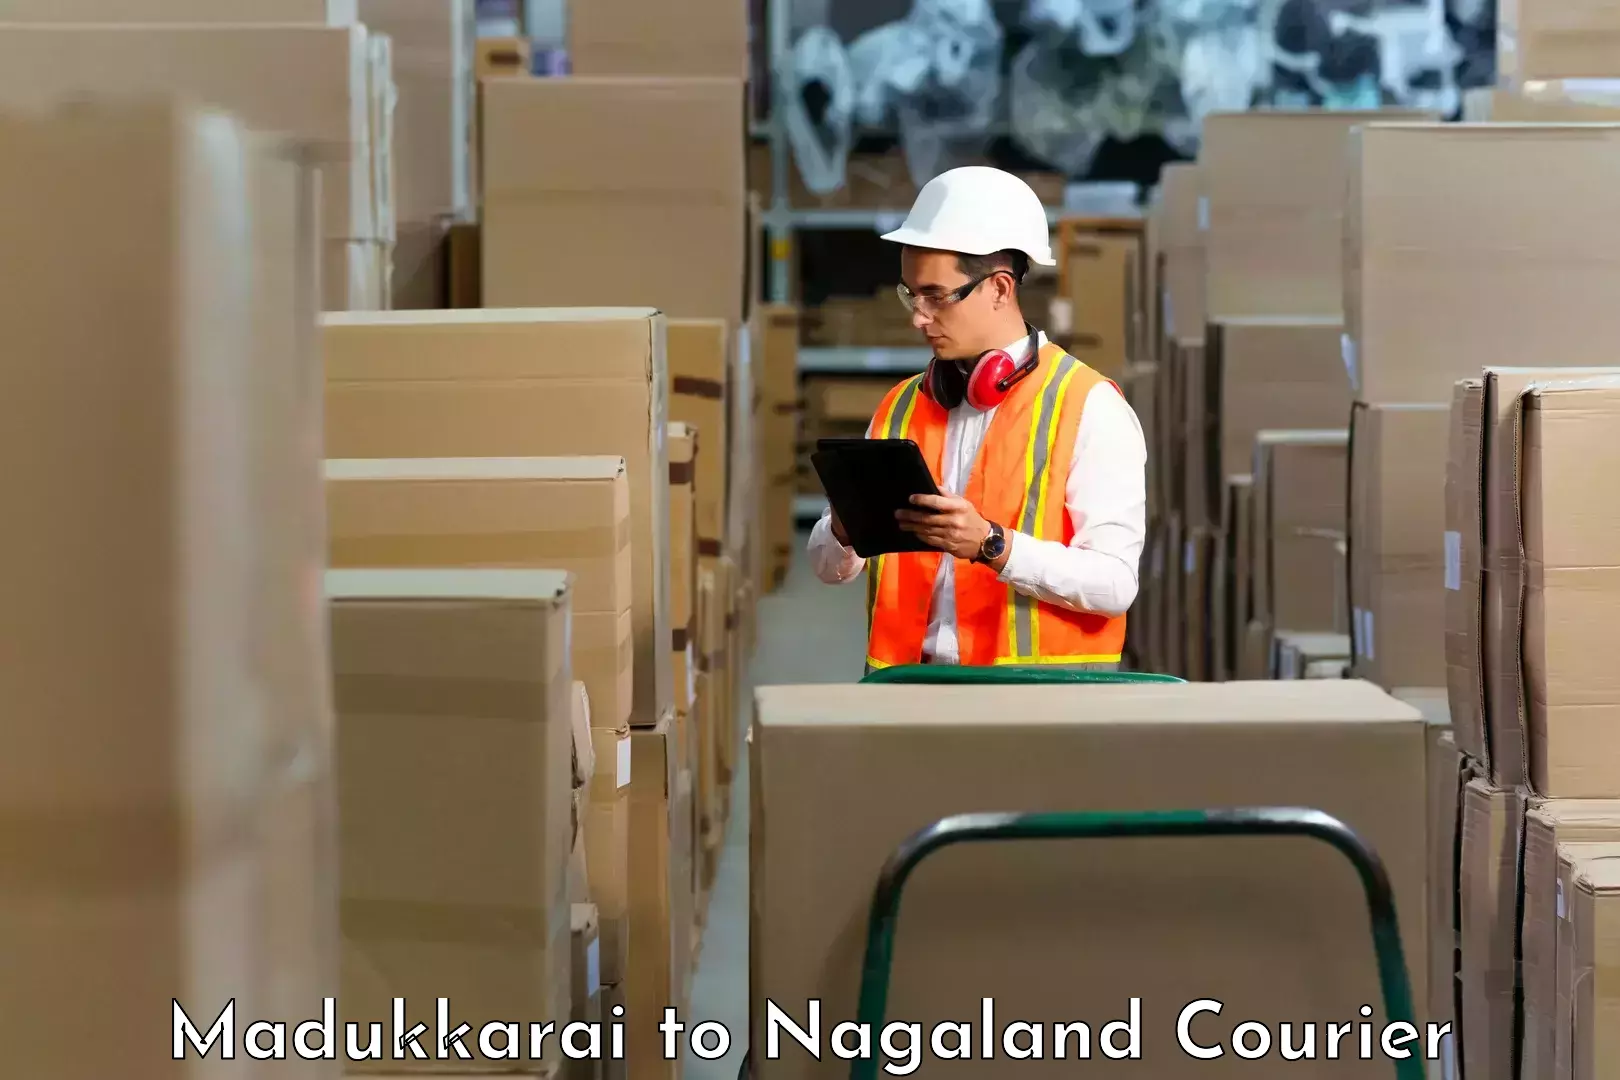 High-performance logistics Madukkarai to NIT Nagaland